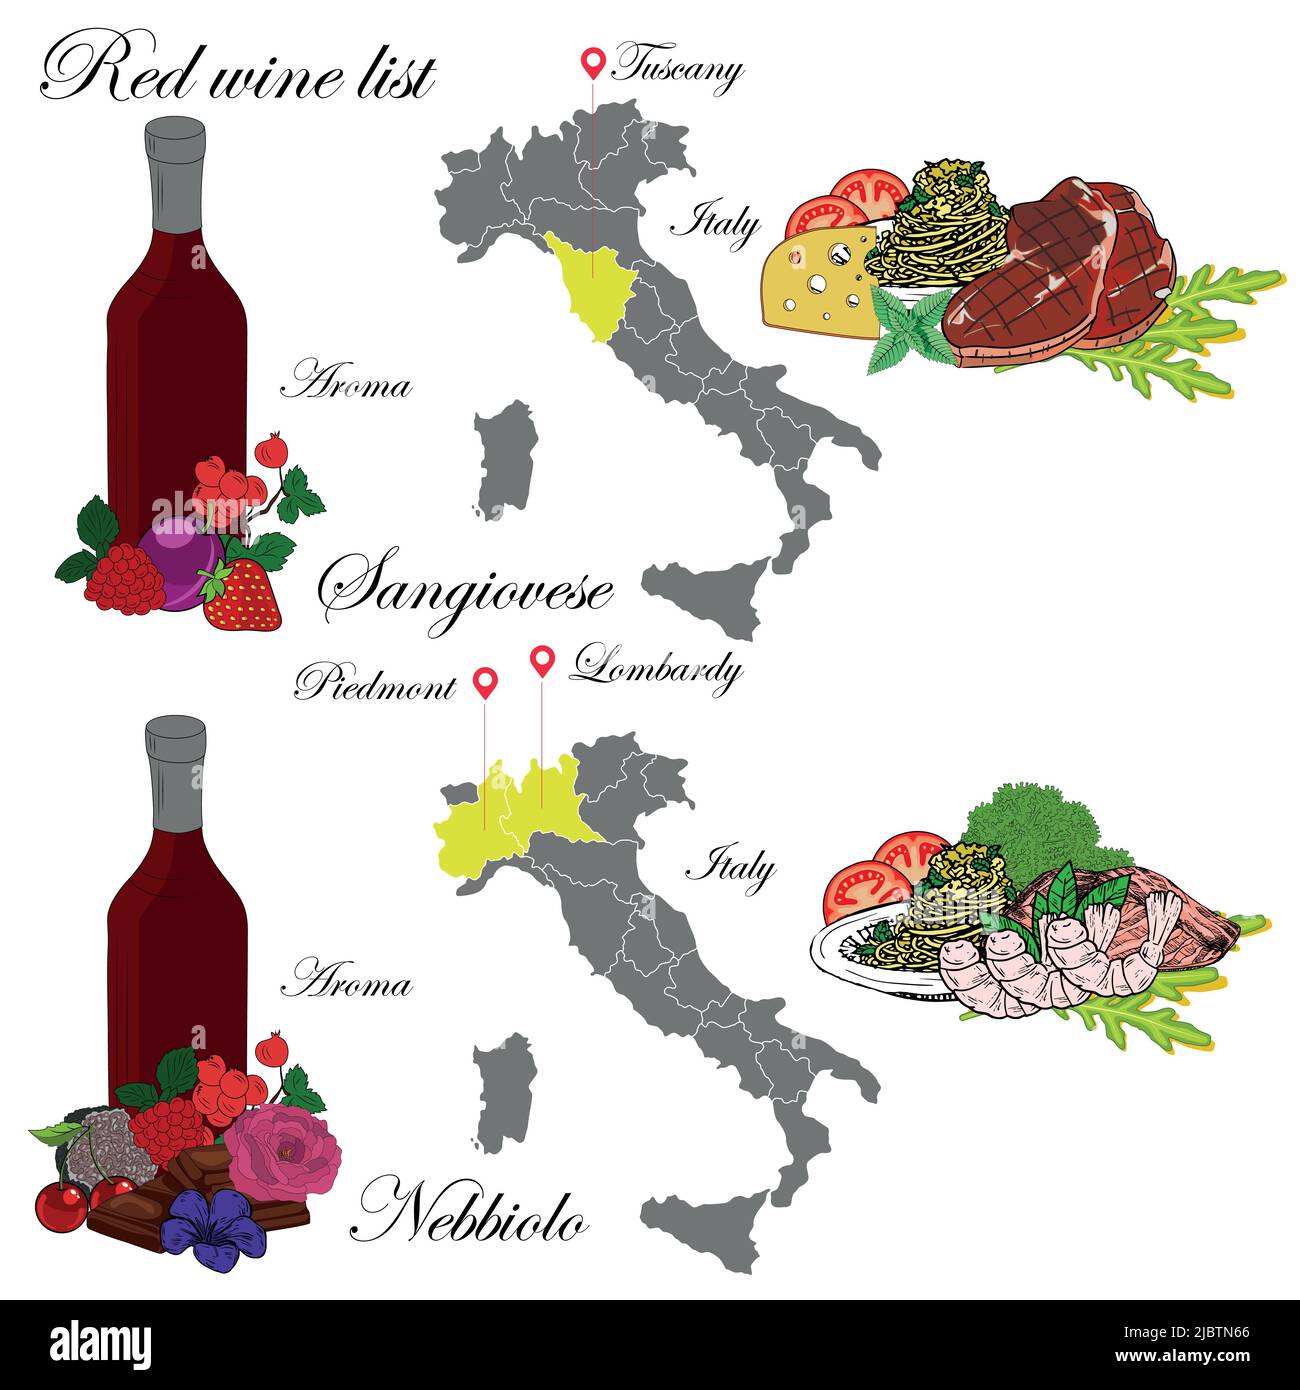 Sangiovese e Nebbiolo. La carta dei vini. Un'illustrazione di un vino rosso con un esempio di aromi, una mappa dei vigneti e cibo che si abbina al vino. Illustrazione Vettoriale